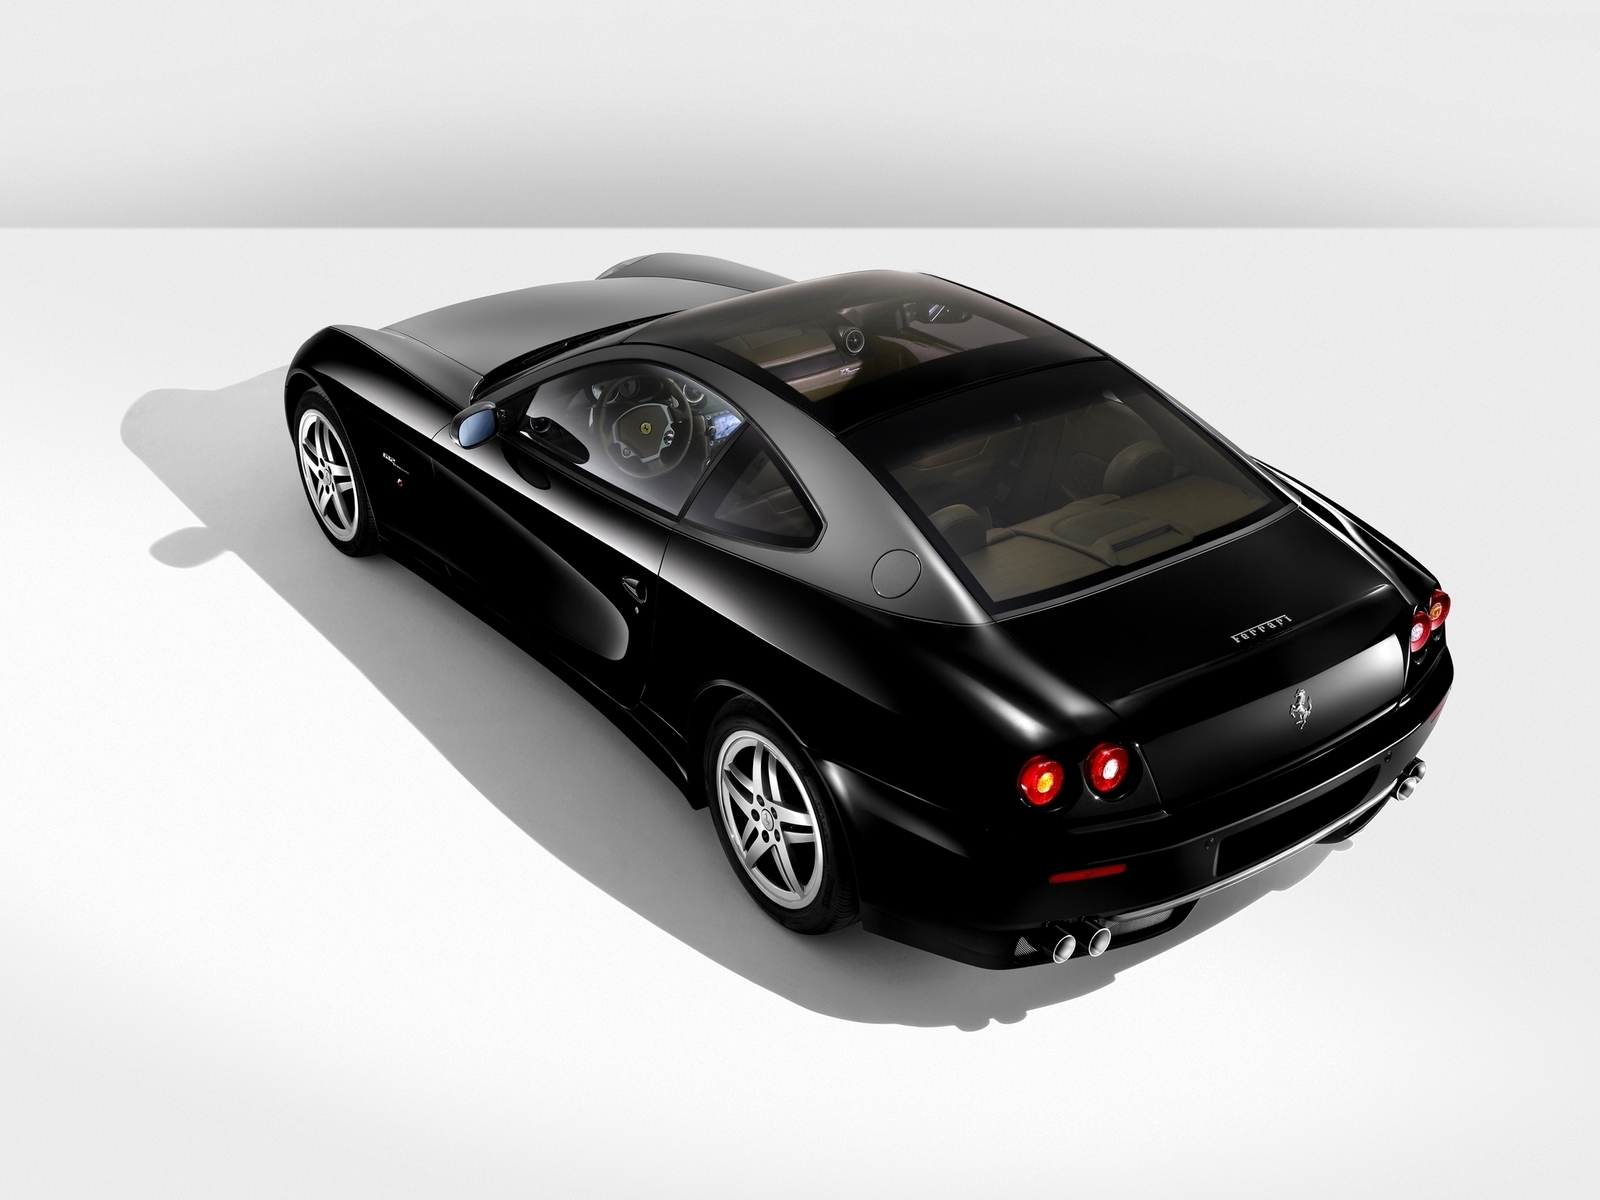 Ferrari 612 Black for 1600 x 1200 resolution